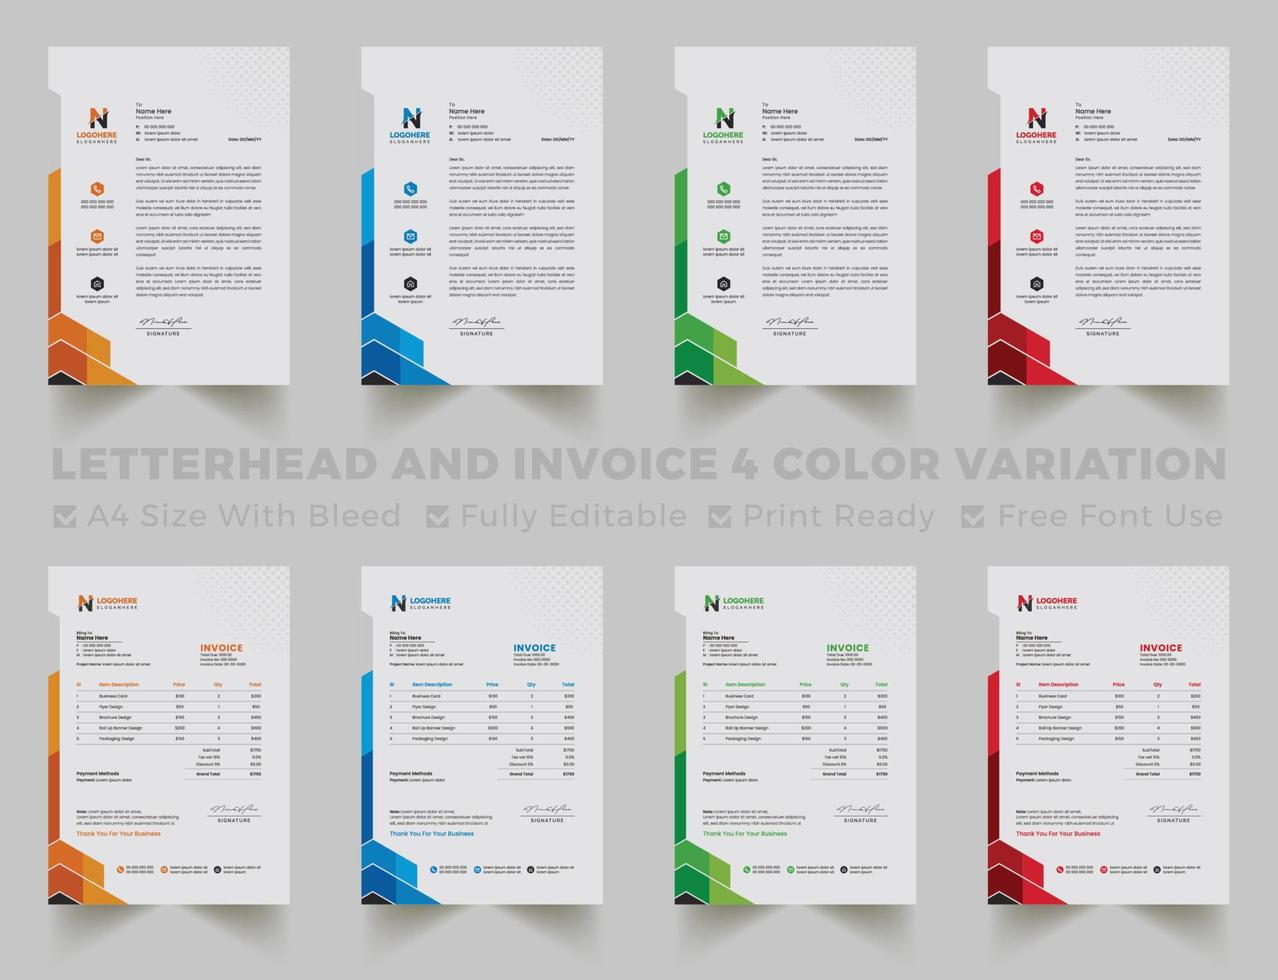 Mehrzweck-Briefkopf und Rechnungsvorlage für Unternehmen im A4-Format. kreatives modernes briefkopf- und rechnungsdesign-vorlagenset mit blauen, grünen, roten und gelben farben vektor